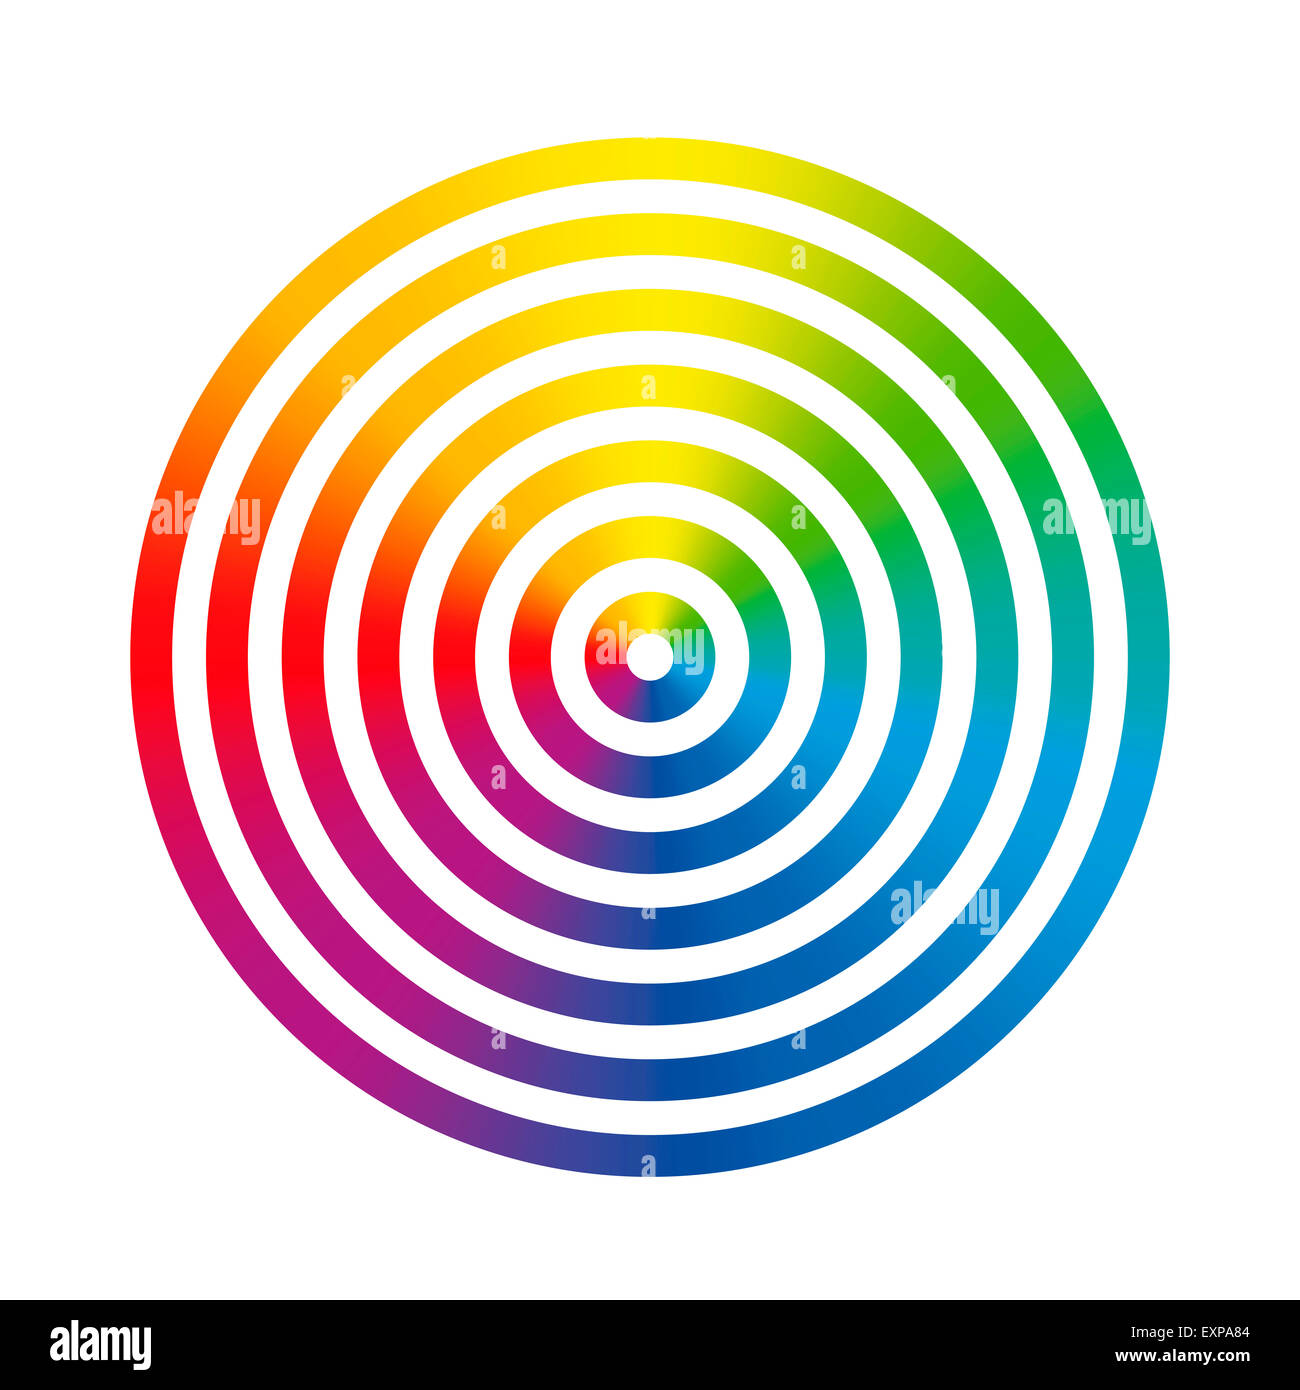 Sieben Regenbogen Farbverlauf farbige Ringe unterschiedlicher Größe, ineinander ineinander geschoben. Stockfoto